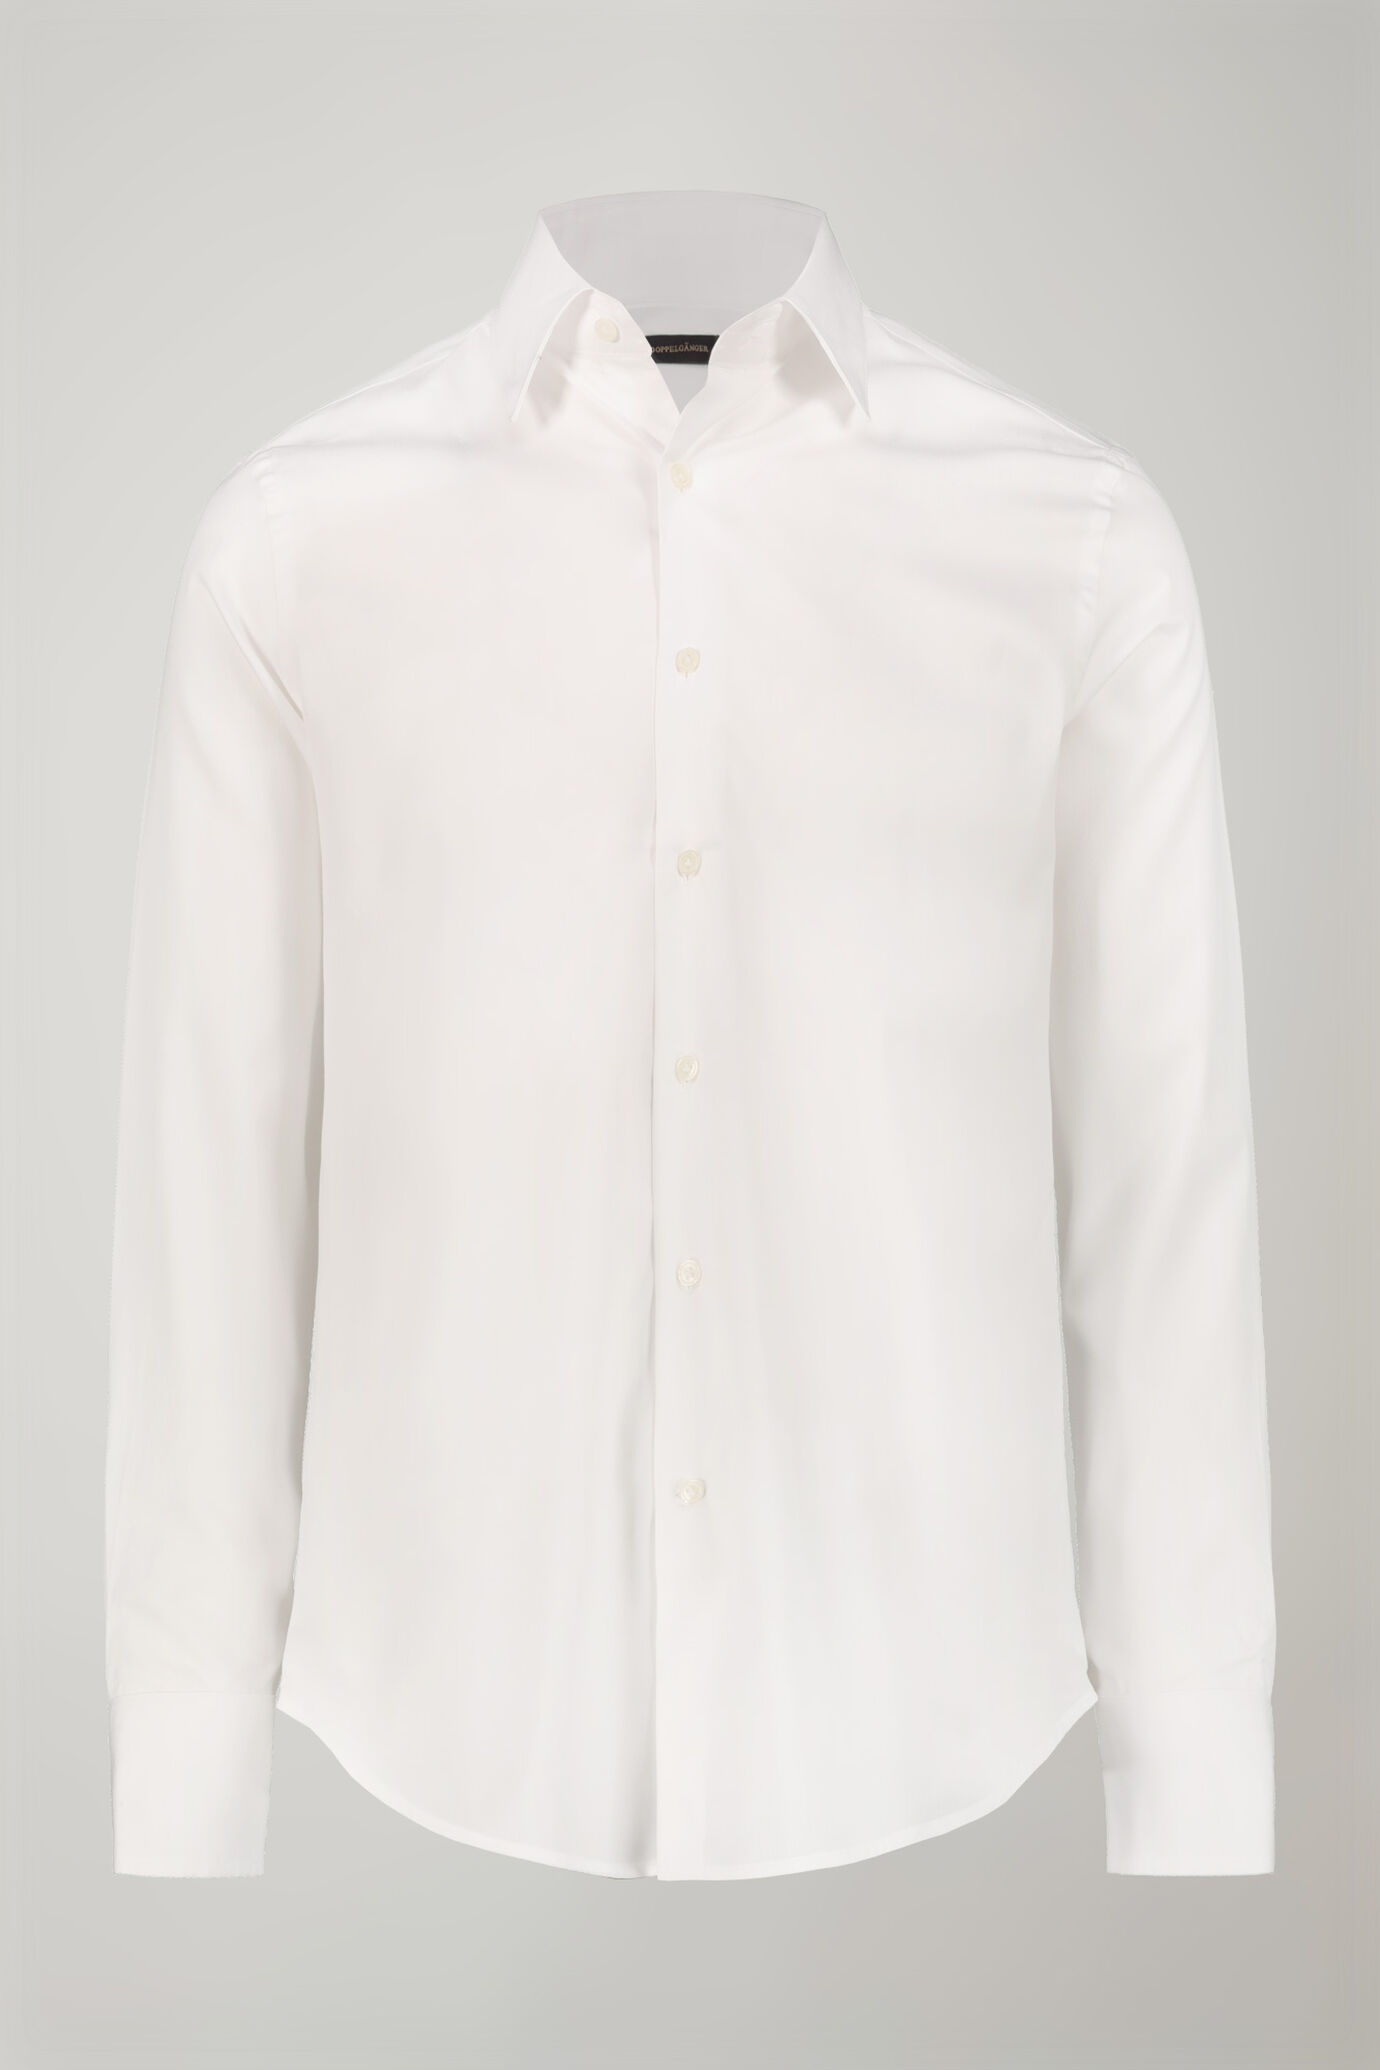 Men's shirt classic collar 100% cotton plain fabric regular fit image number 4